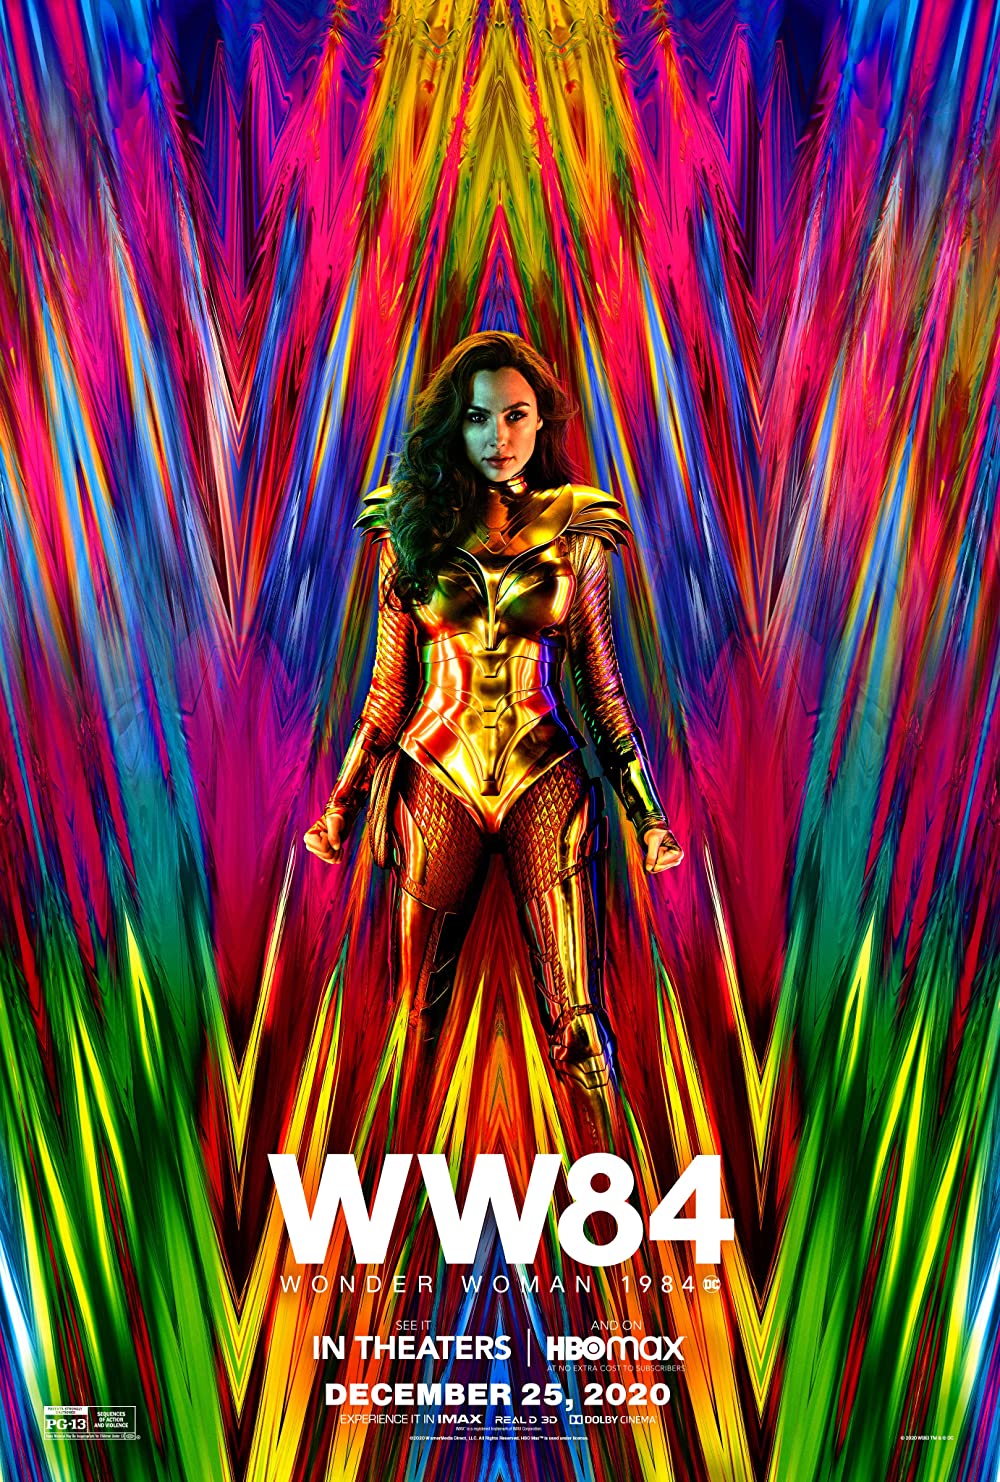 Filmbeschreibung zu Wonder Woman 1984 (OV)